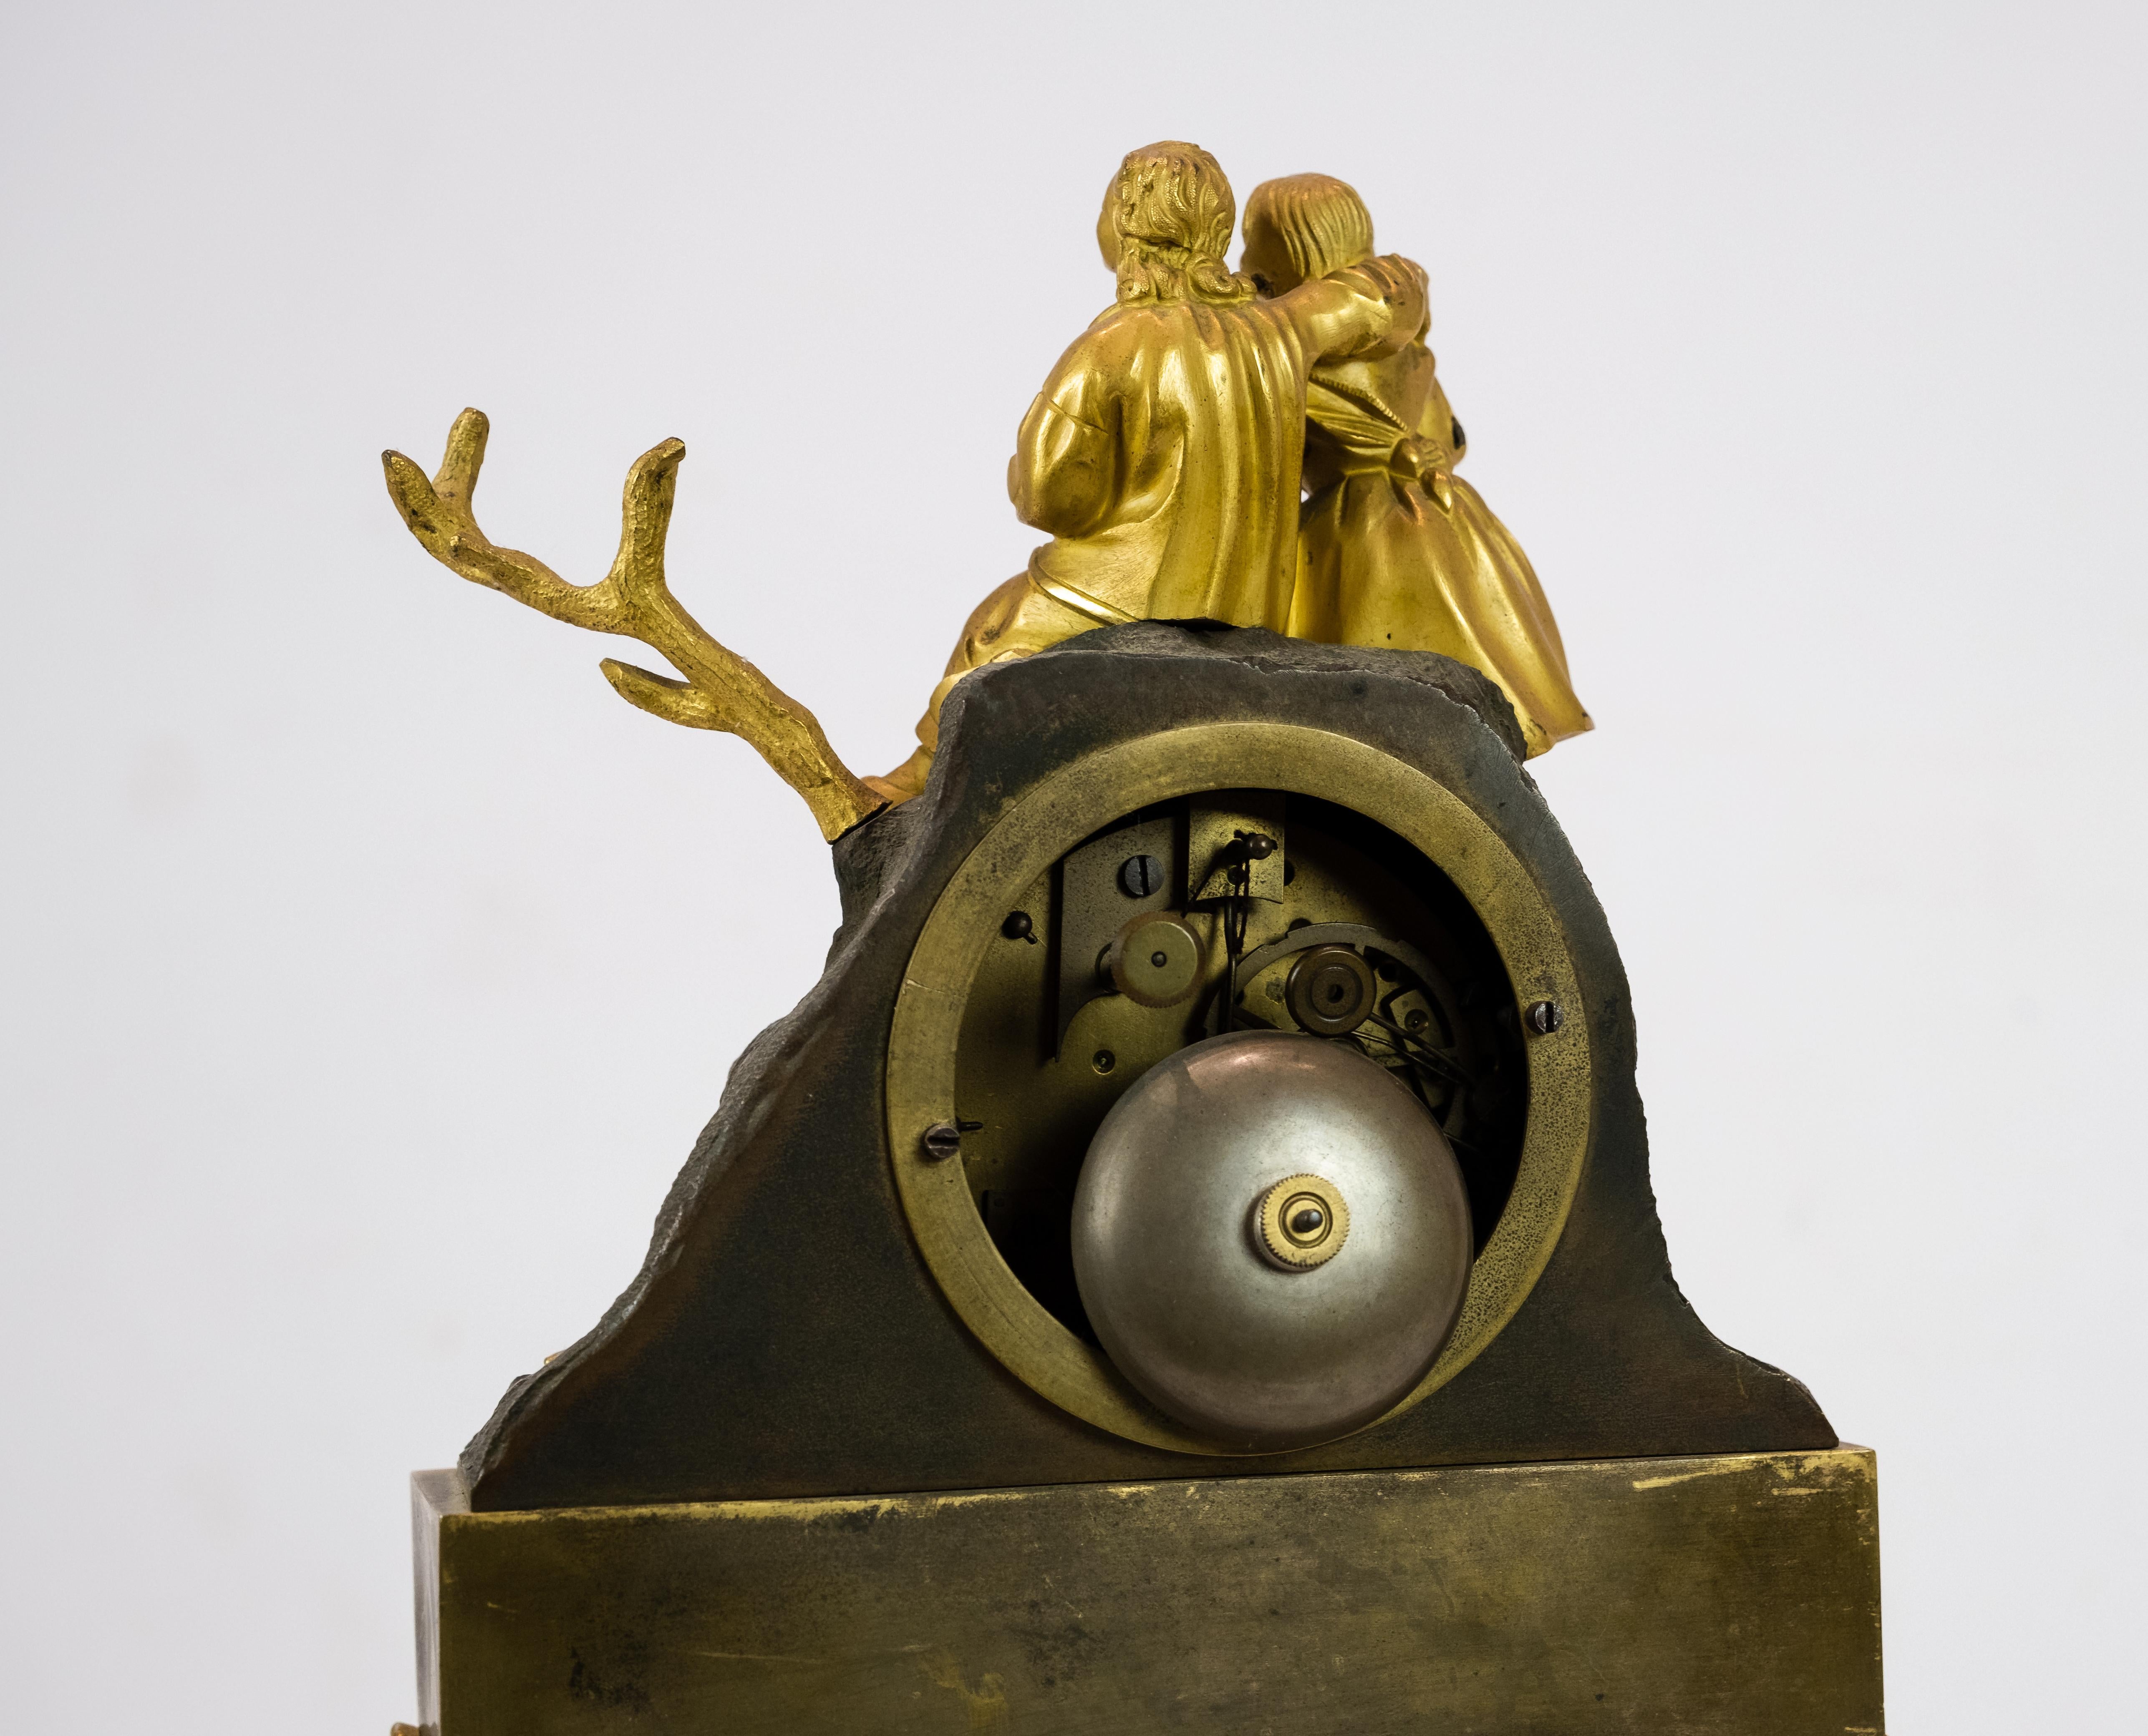 Die französische Kaminuhr aus den 1820er Jahren strahlt zeitlose Eleganz und Raffinesse aus. Dieser exquisite Zeitmesser aus luxuriöser, vergoldeter Bronze zeigt die Opulenz und die raffinierte Handwerkskunst der damaligen Zeit.

Das Design der Uhr